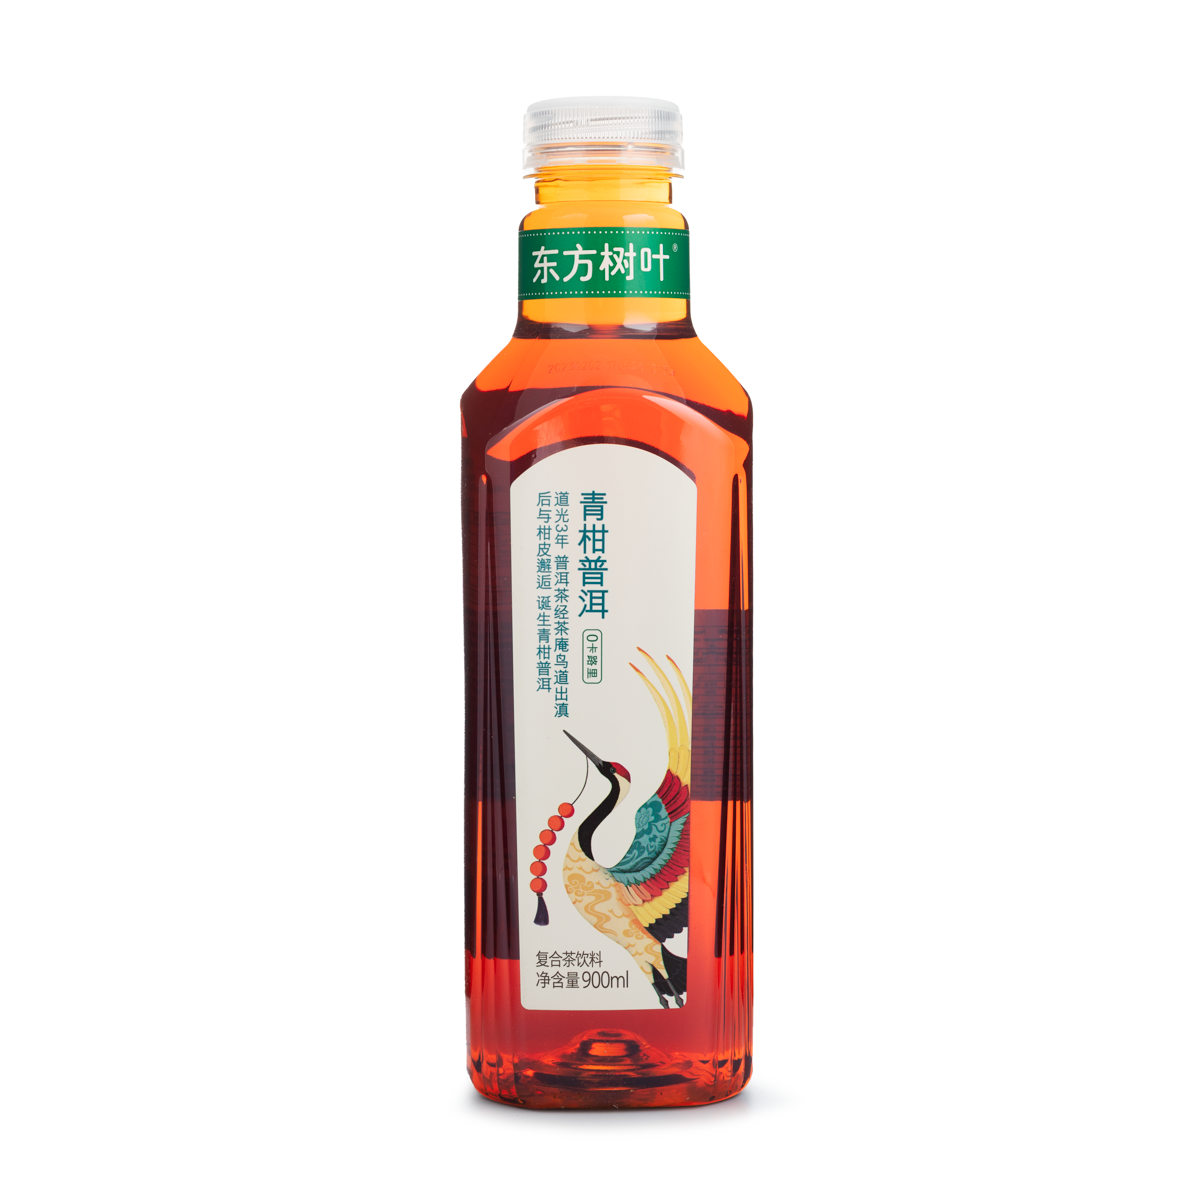 农夫山泉东方树叶青柑普洱茶 Nongfu Spring DFSY Green Tangerine Pu-Er Tea 900ml